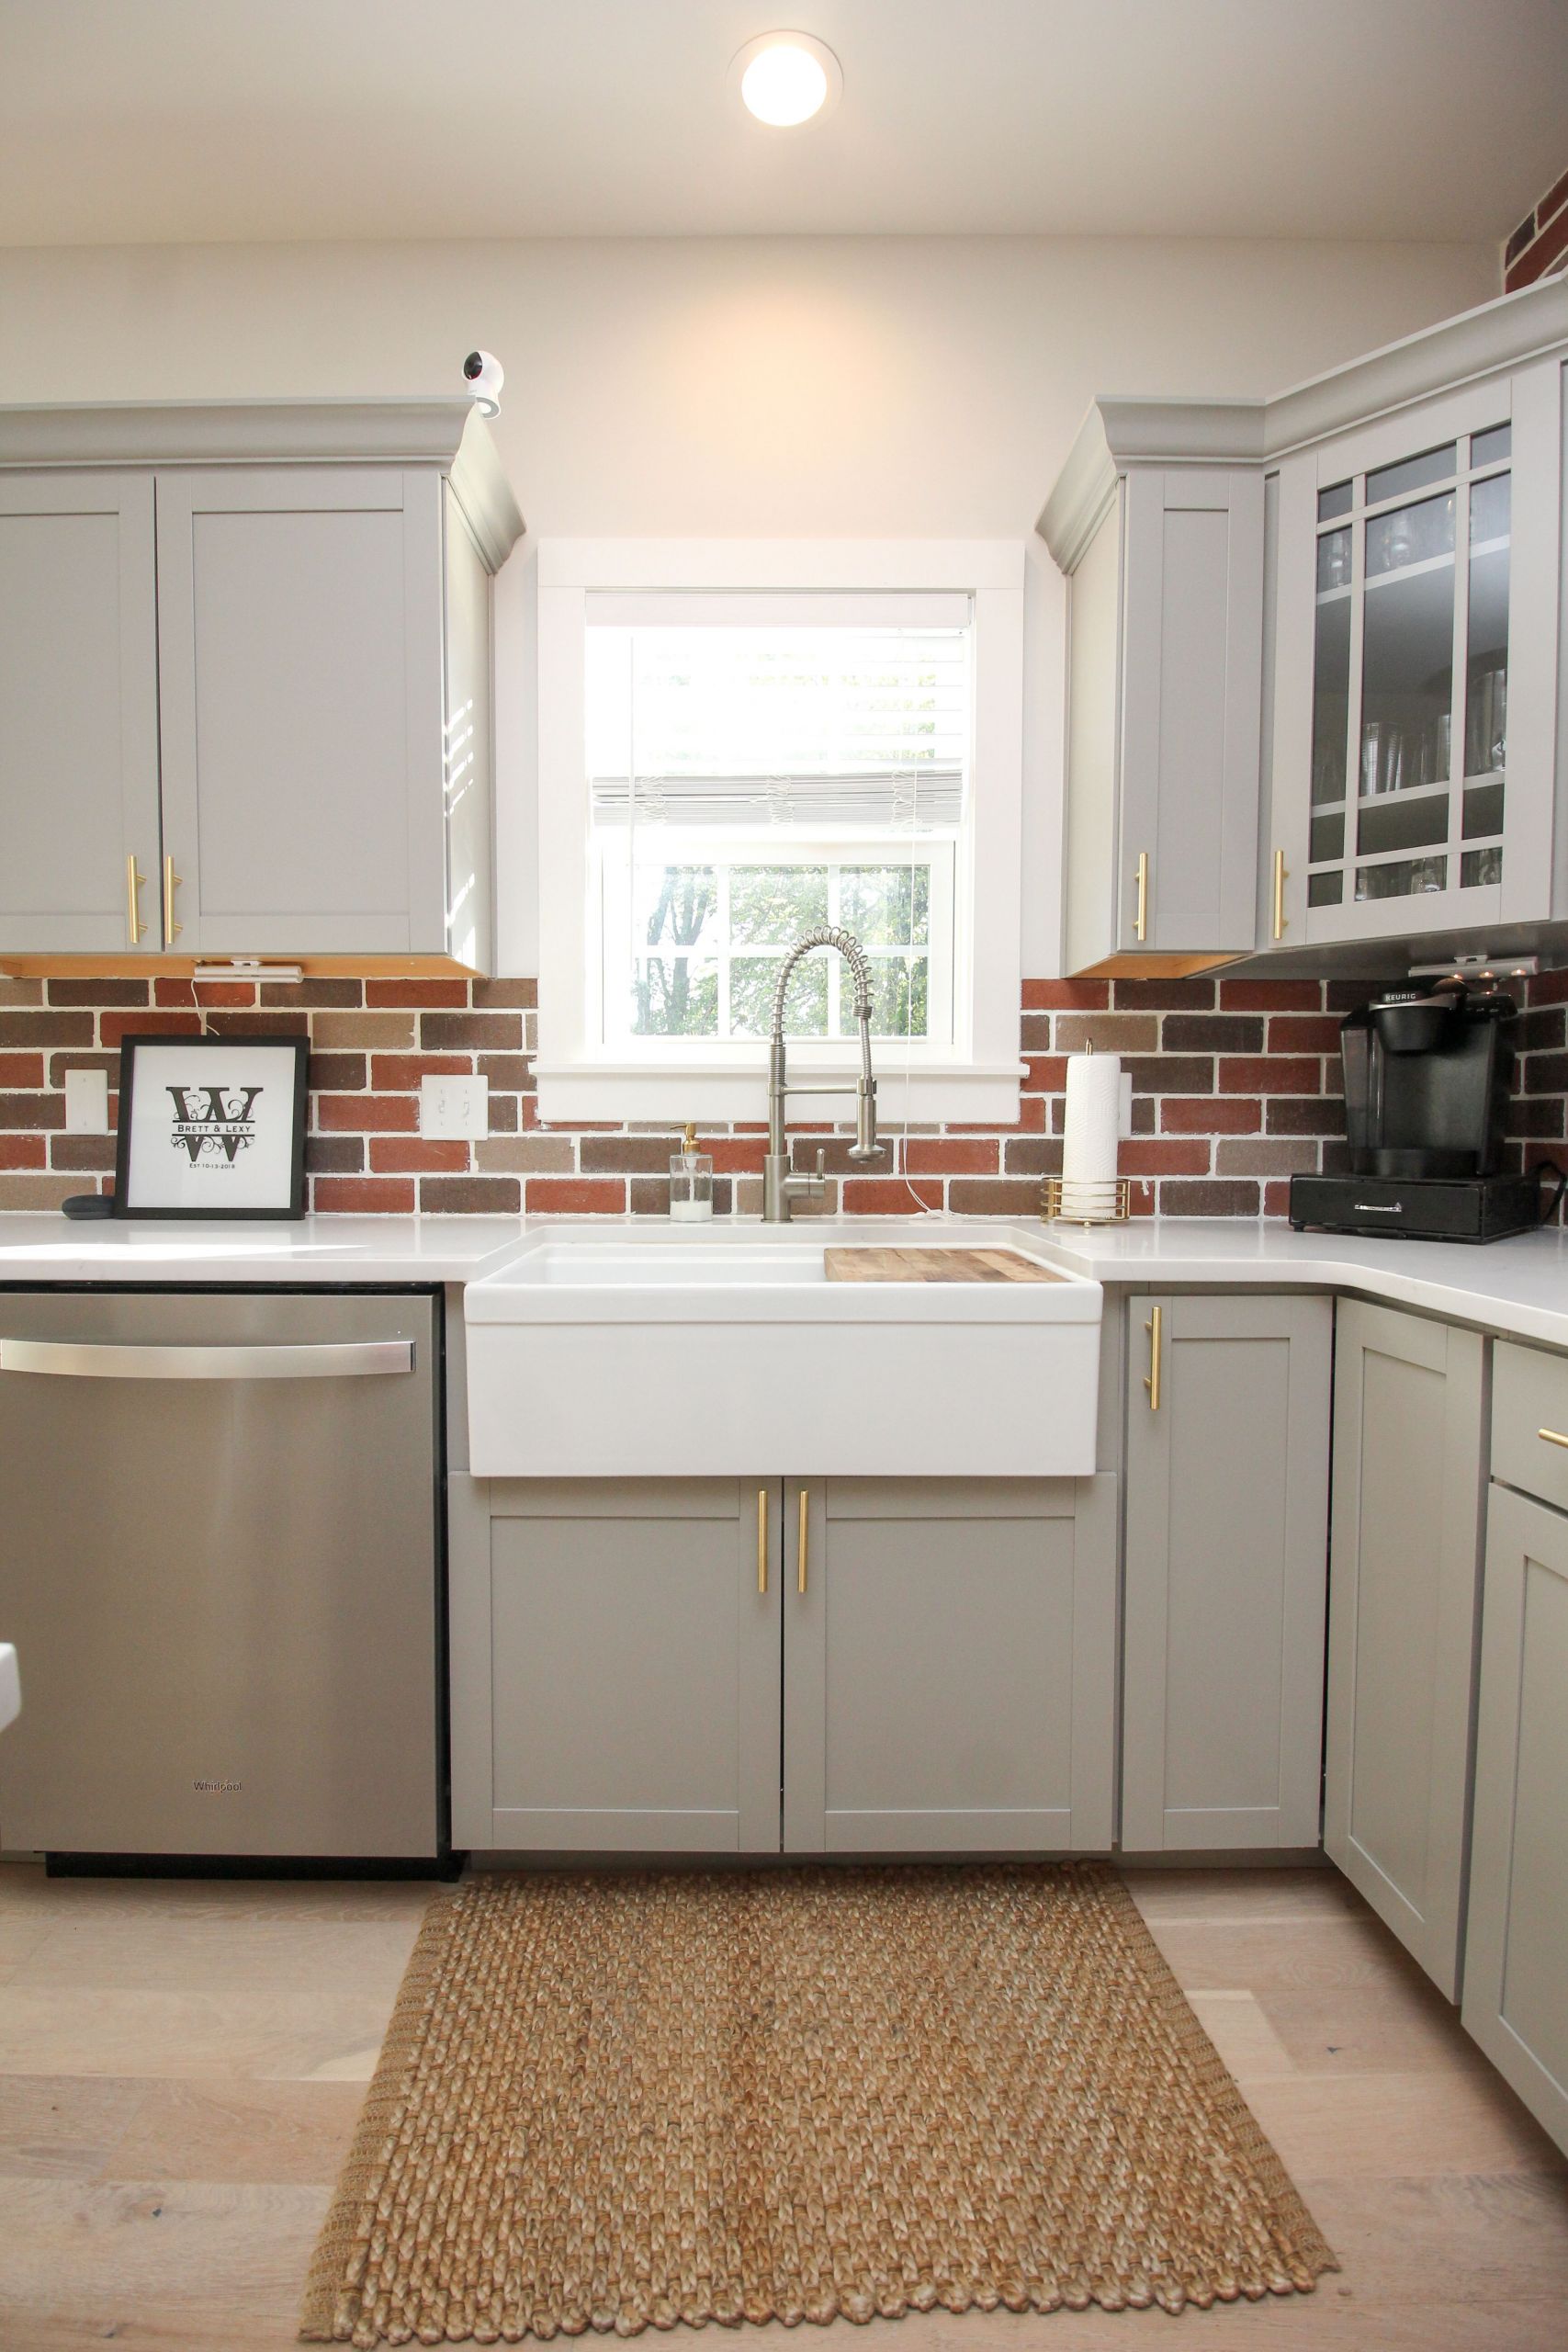 Kitchen Ideas with White Brick Backsplash Best Of Farmhouse Kitchen Sink with Brick Backsplash Stainless